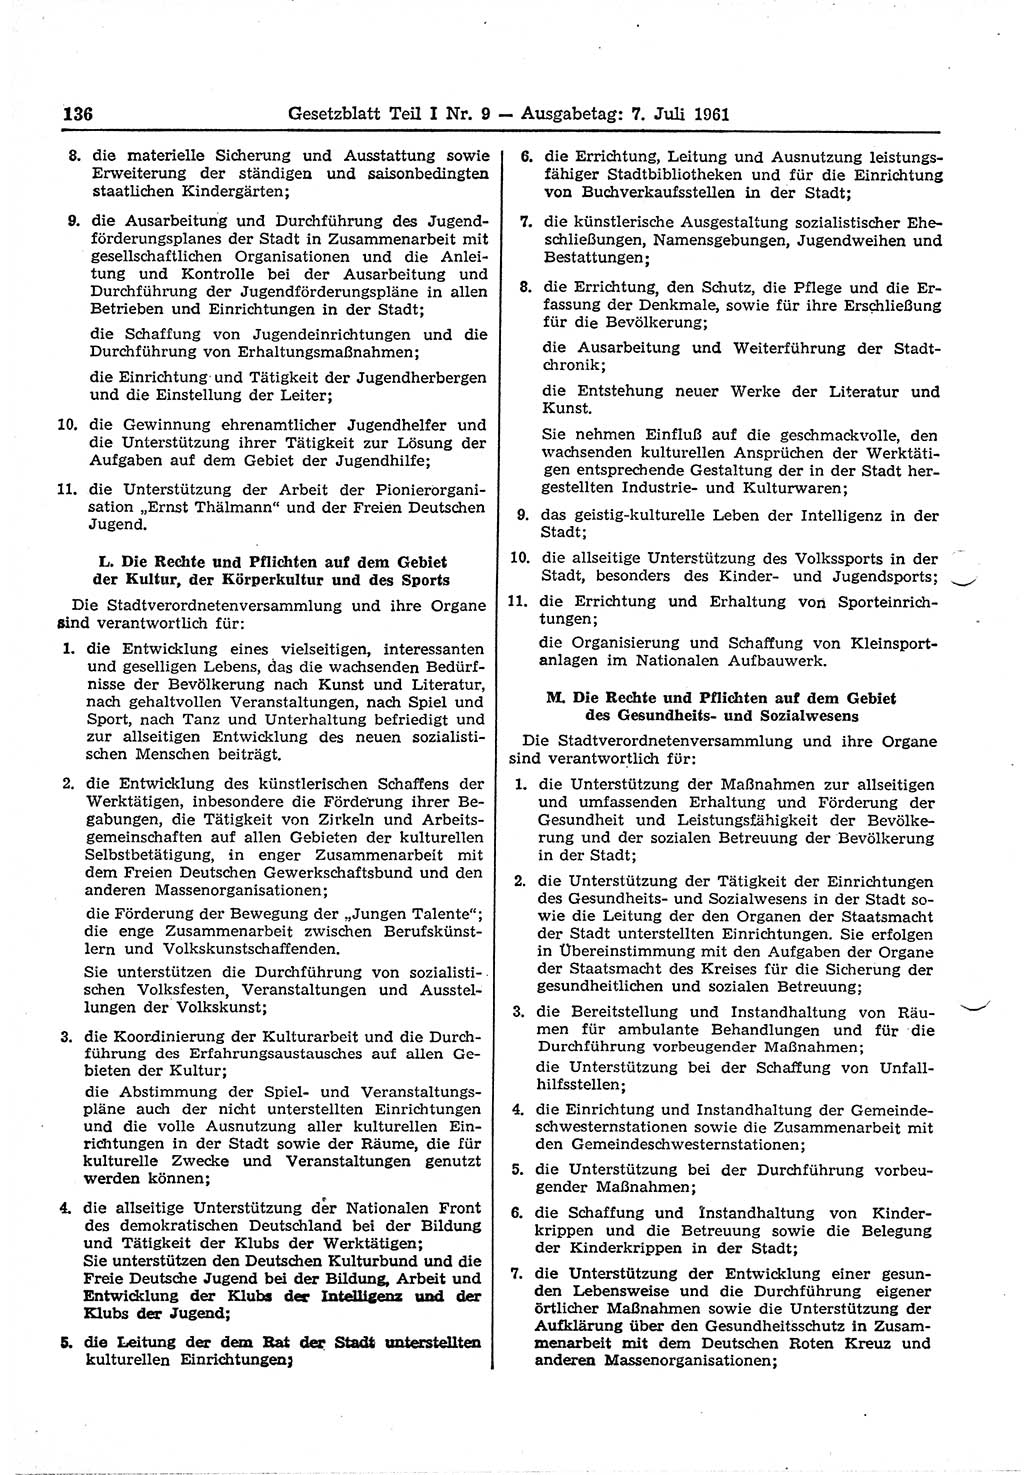 Gesetzblatt (GBl.) der Deutschen Demokratischen Republik (DDR) Teil Ⅰ 1961, Seite 136 (GBl. DDR Ⅰ 1961, S. 136)